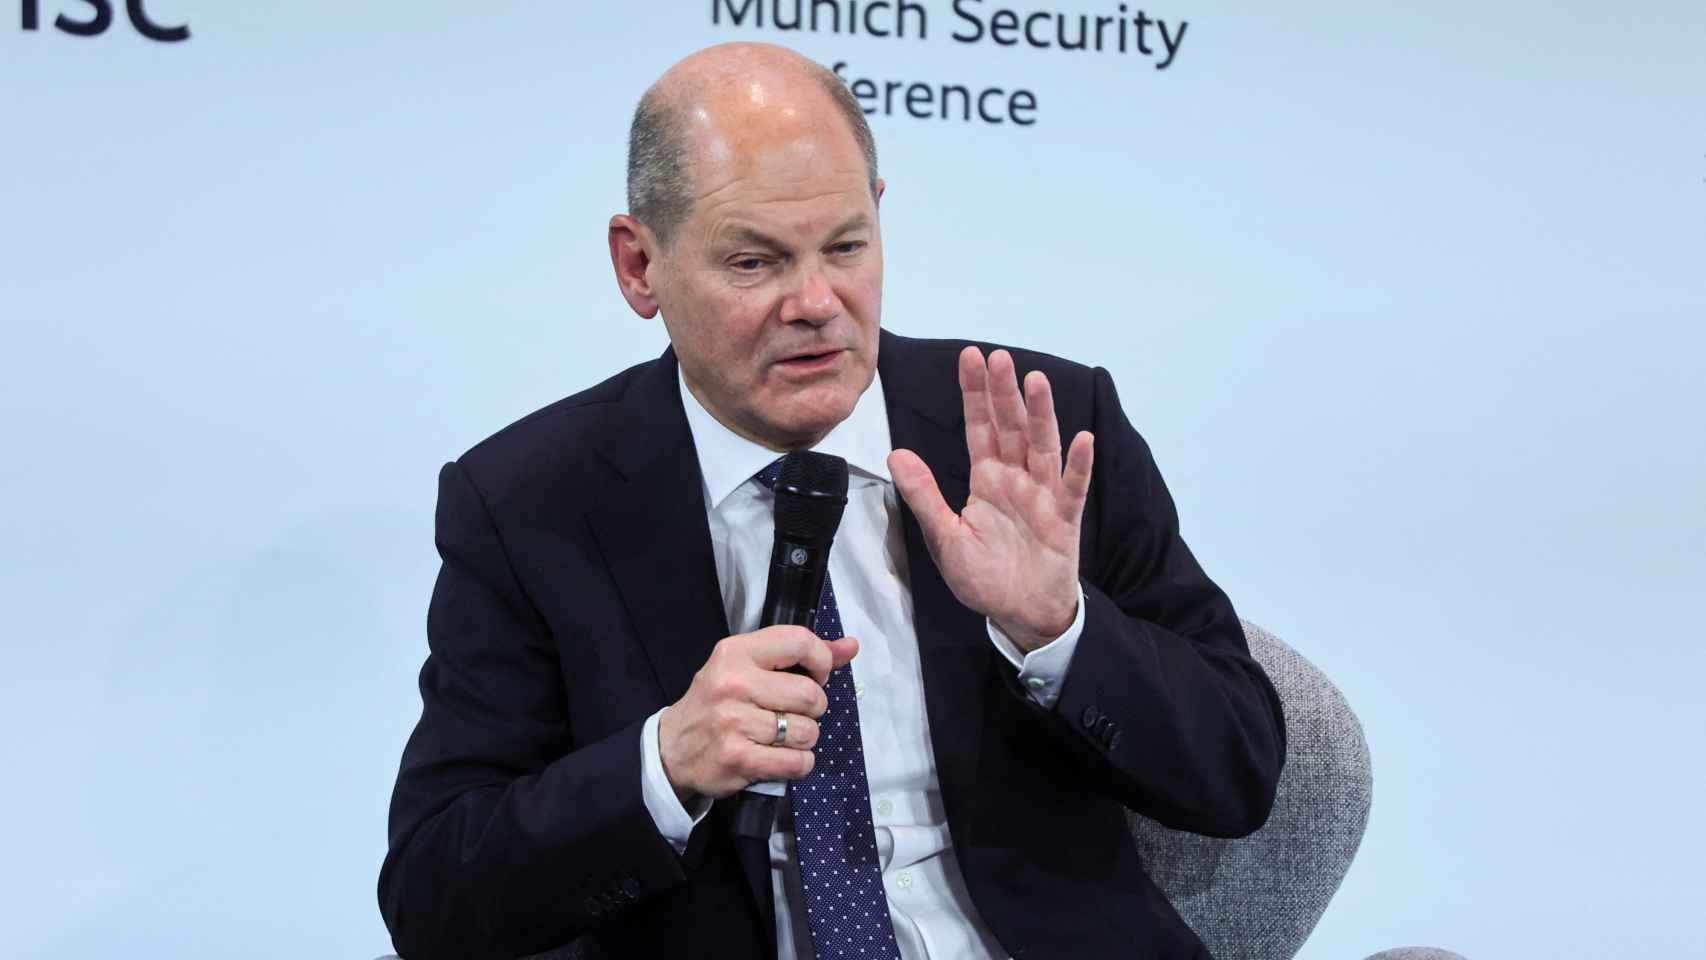 Le chancelier Olaf Scholz lors de son discours à la conférence sur la sécurité de Munich, vendredi.